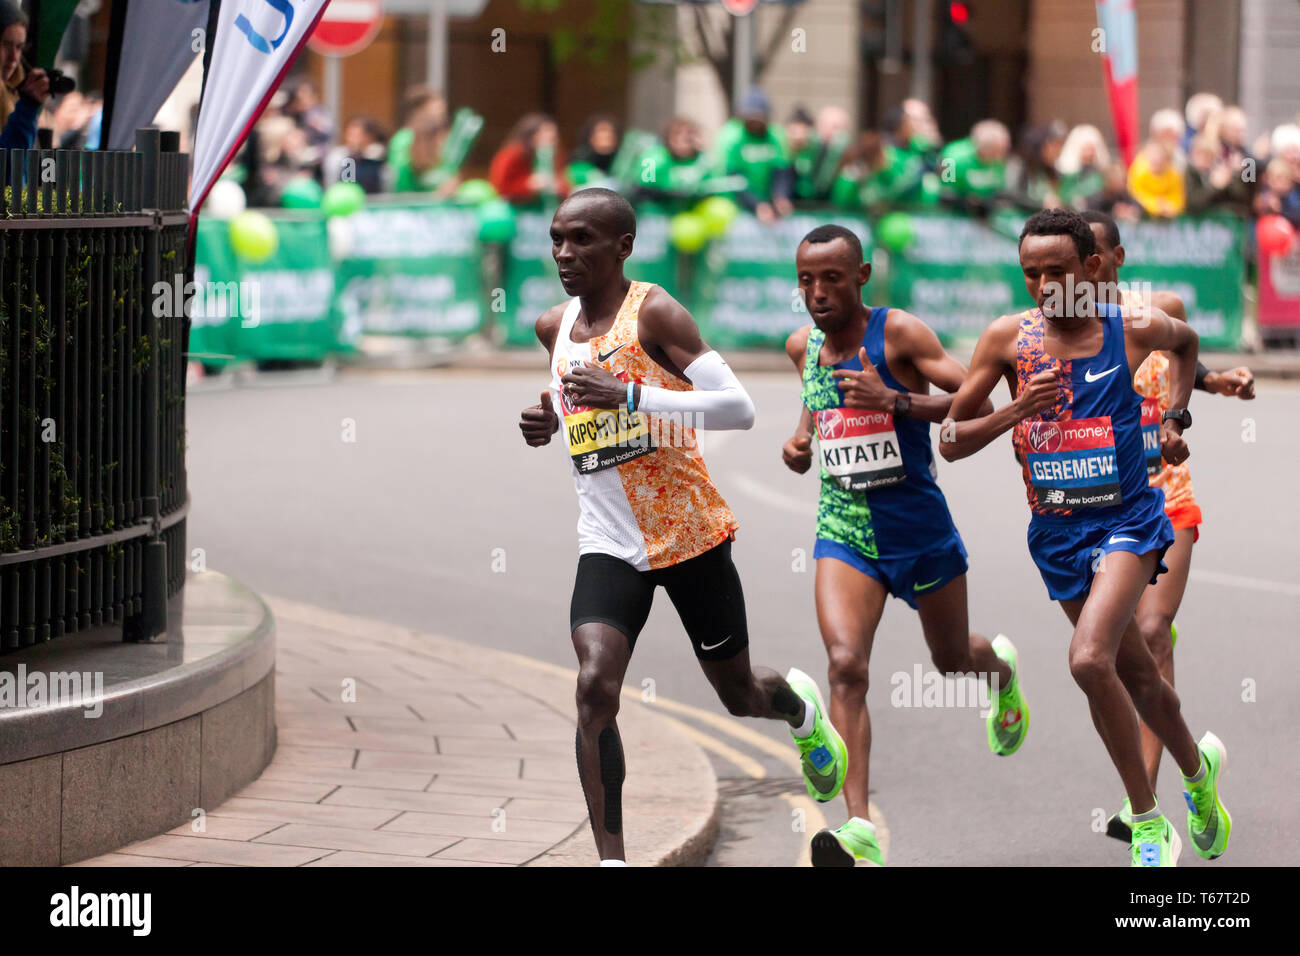 Eliud Kipchoge dal Kenya, portando il Uomini Elite 2019 Maratona di Londra, da Mosinet Geremew, Tola Shura Kitata e mulo Wasihun Eliud, è andato su win in un tempo di 02:02:37 Foto Stock